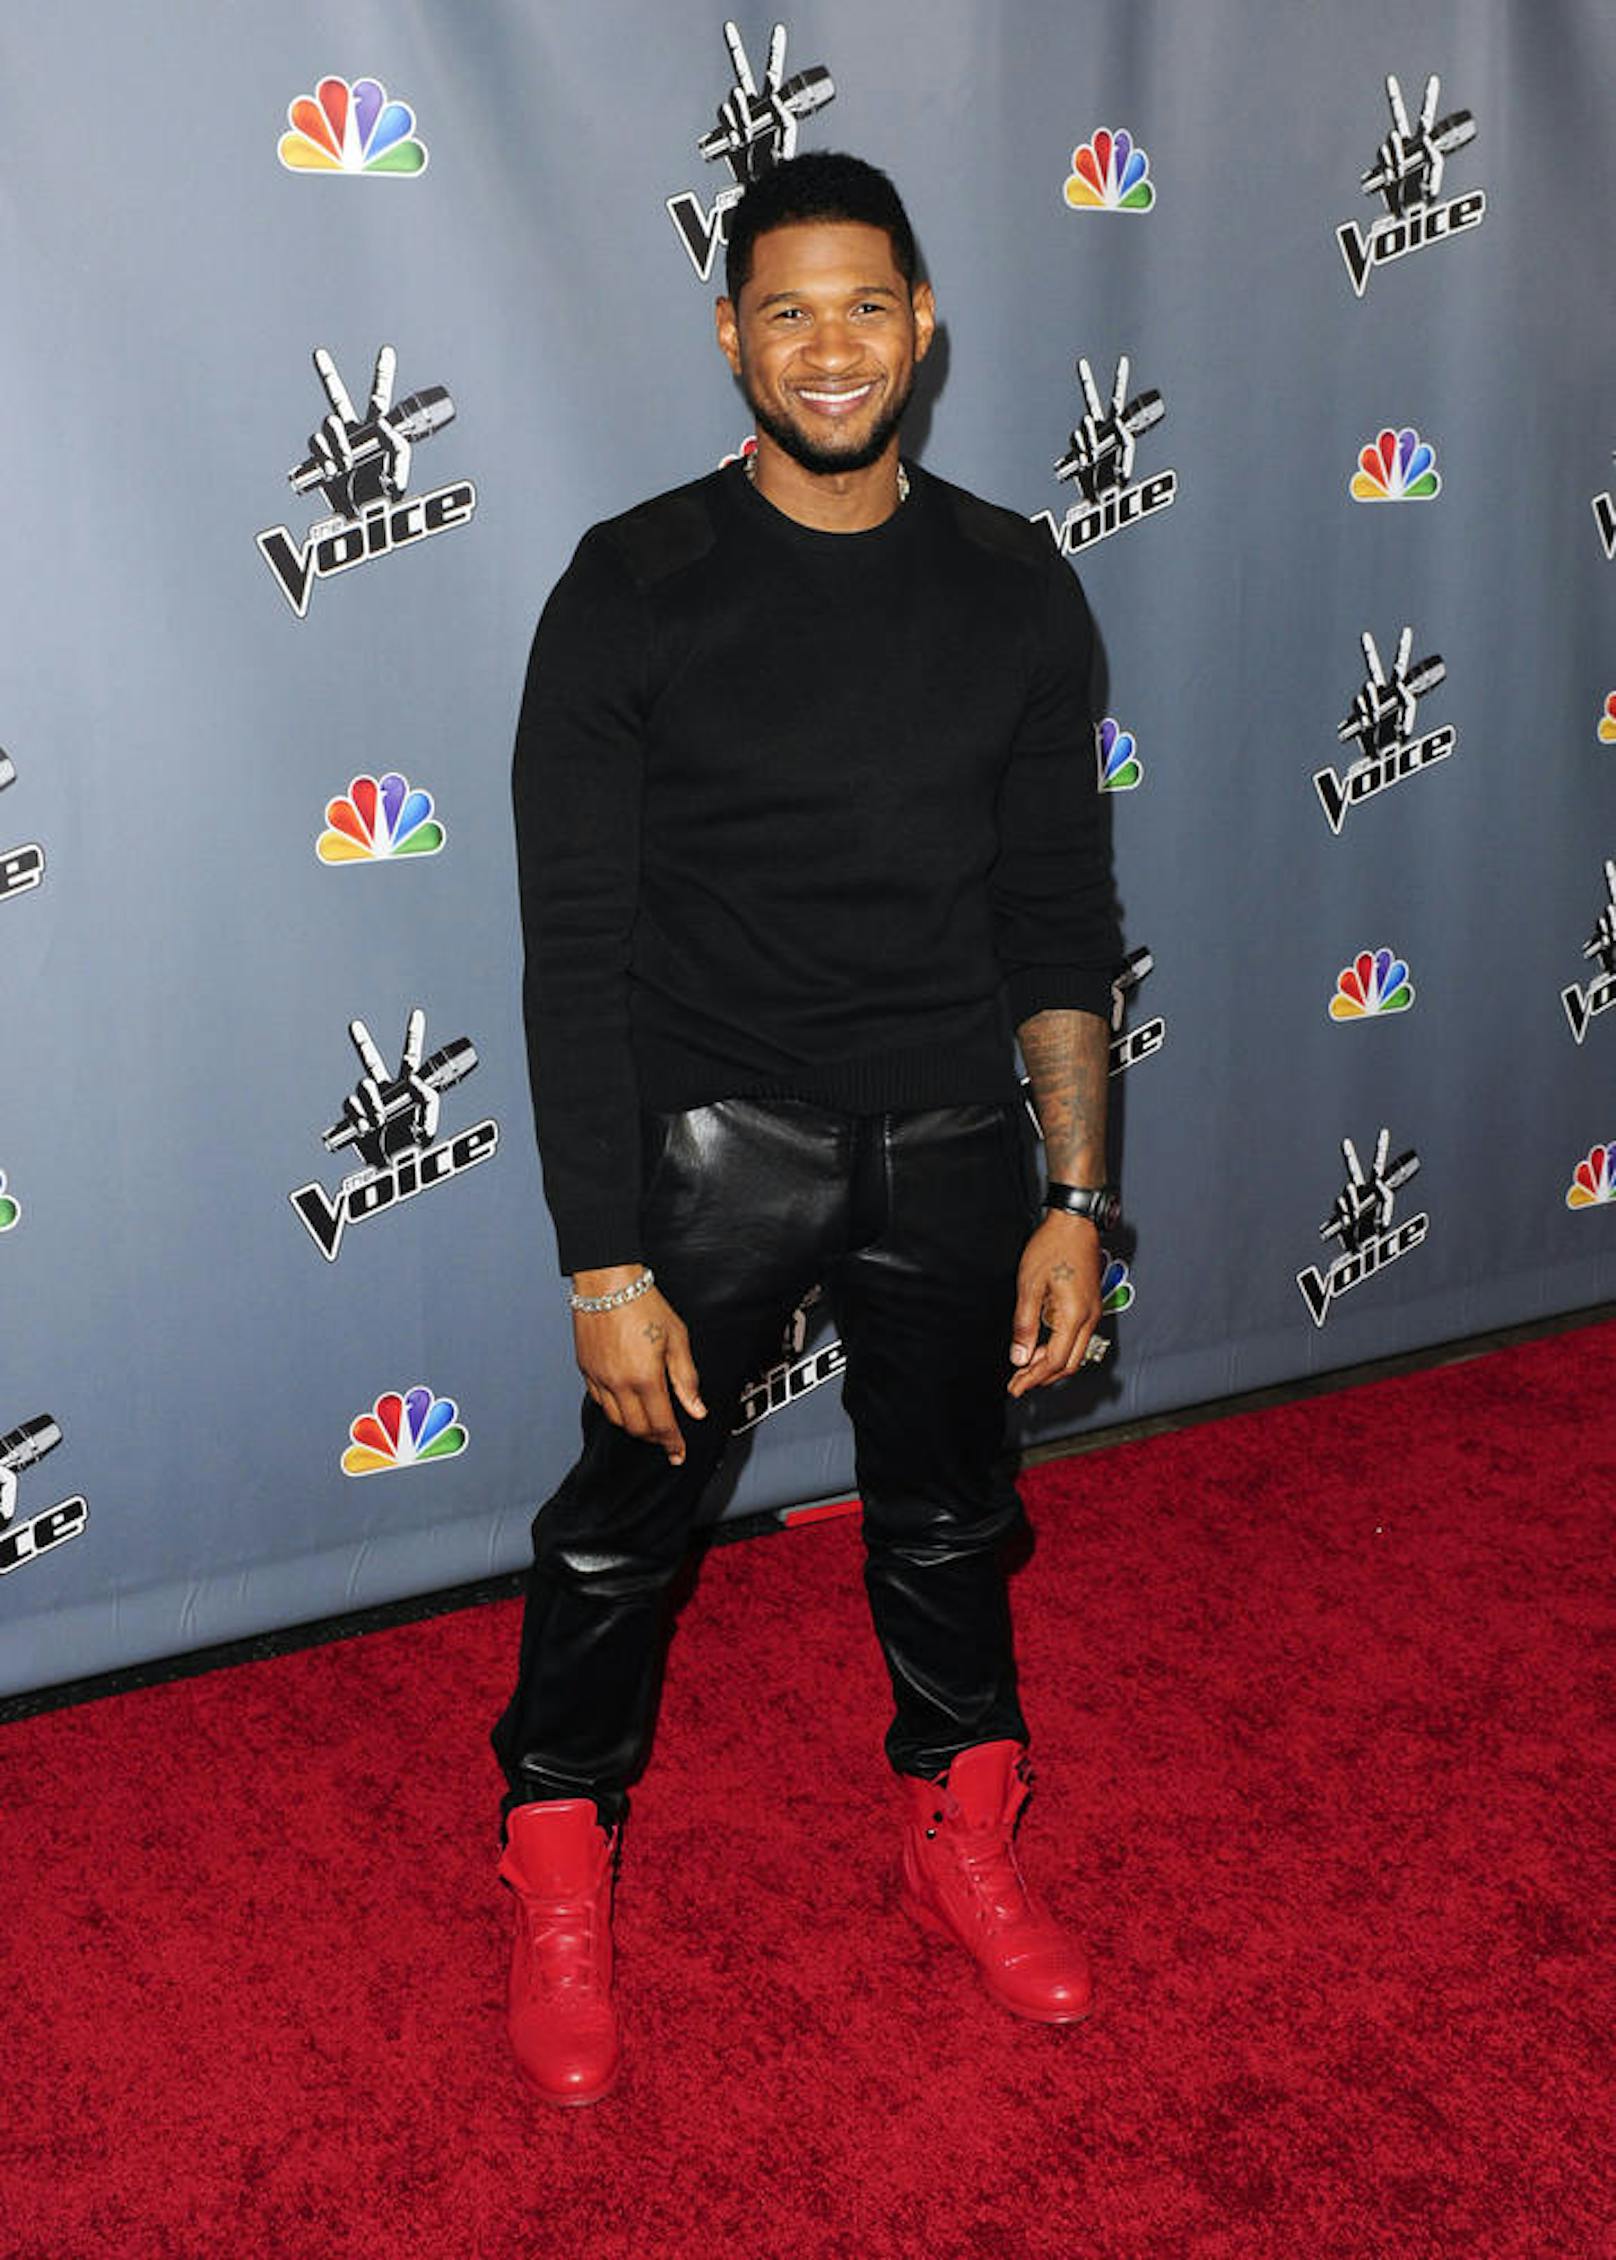 Usher bei der Premiere von "The Voice" Staffel 4 in Los Angeles, 2013.